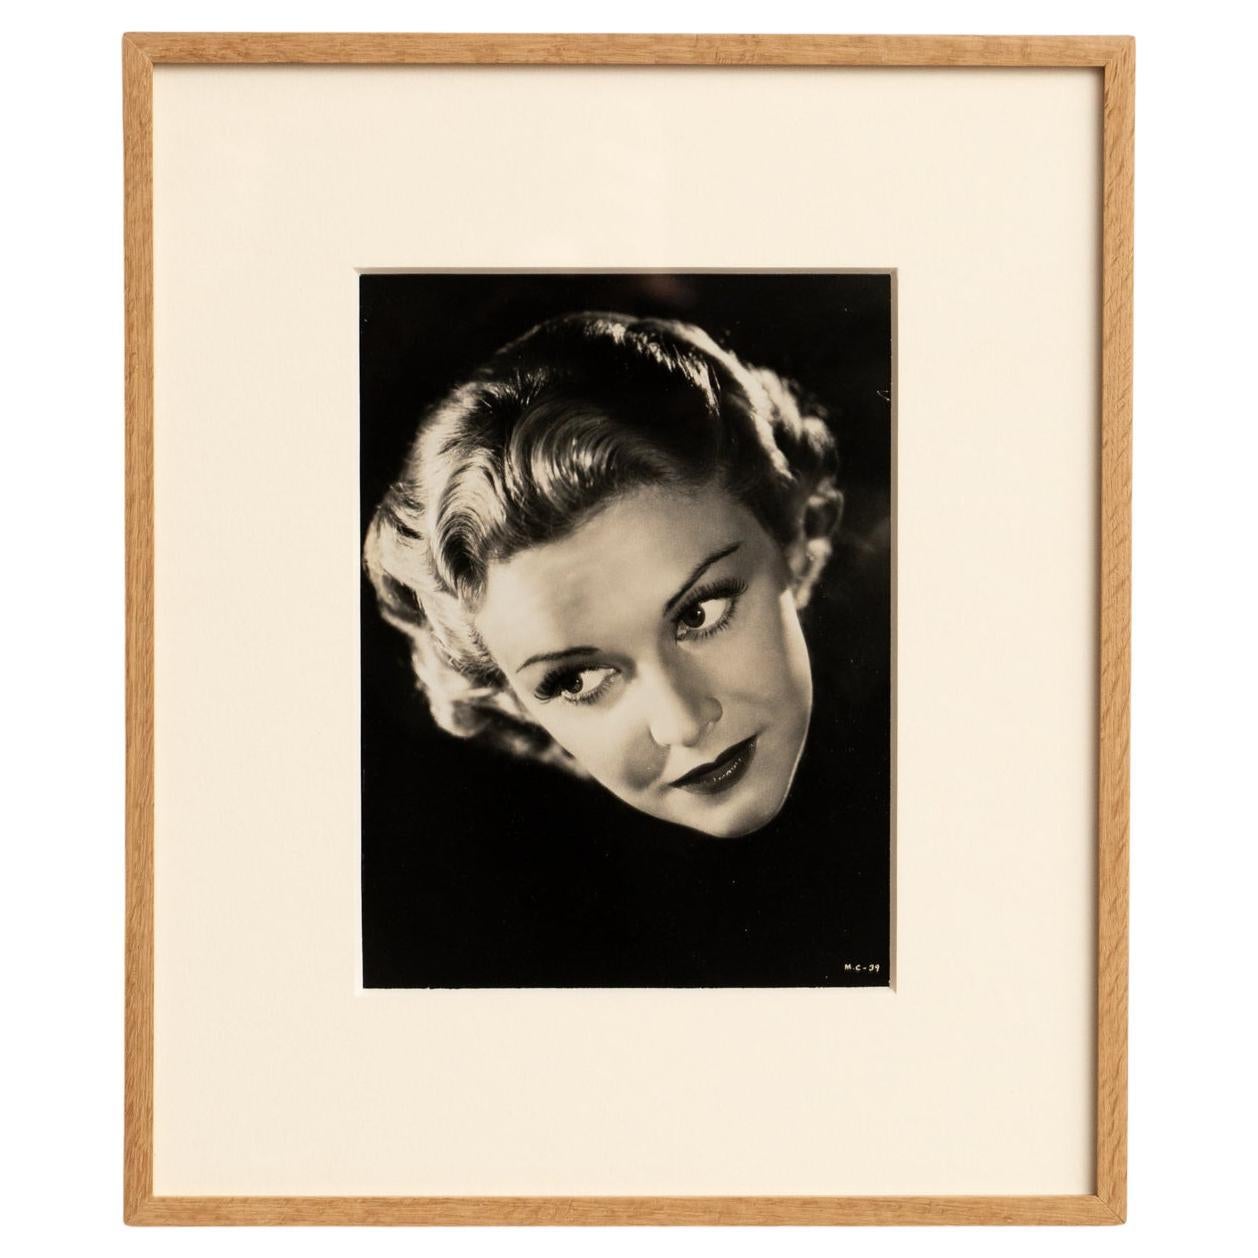 Photographie encadrée du portrait en noir et blanc de Madeline Carroll, vers 1938